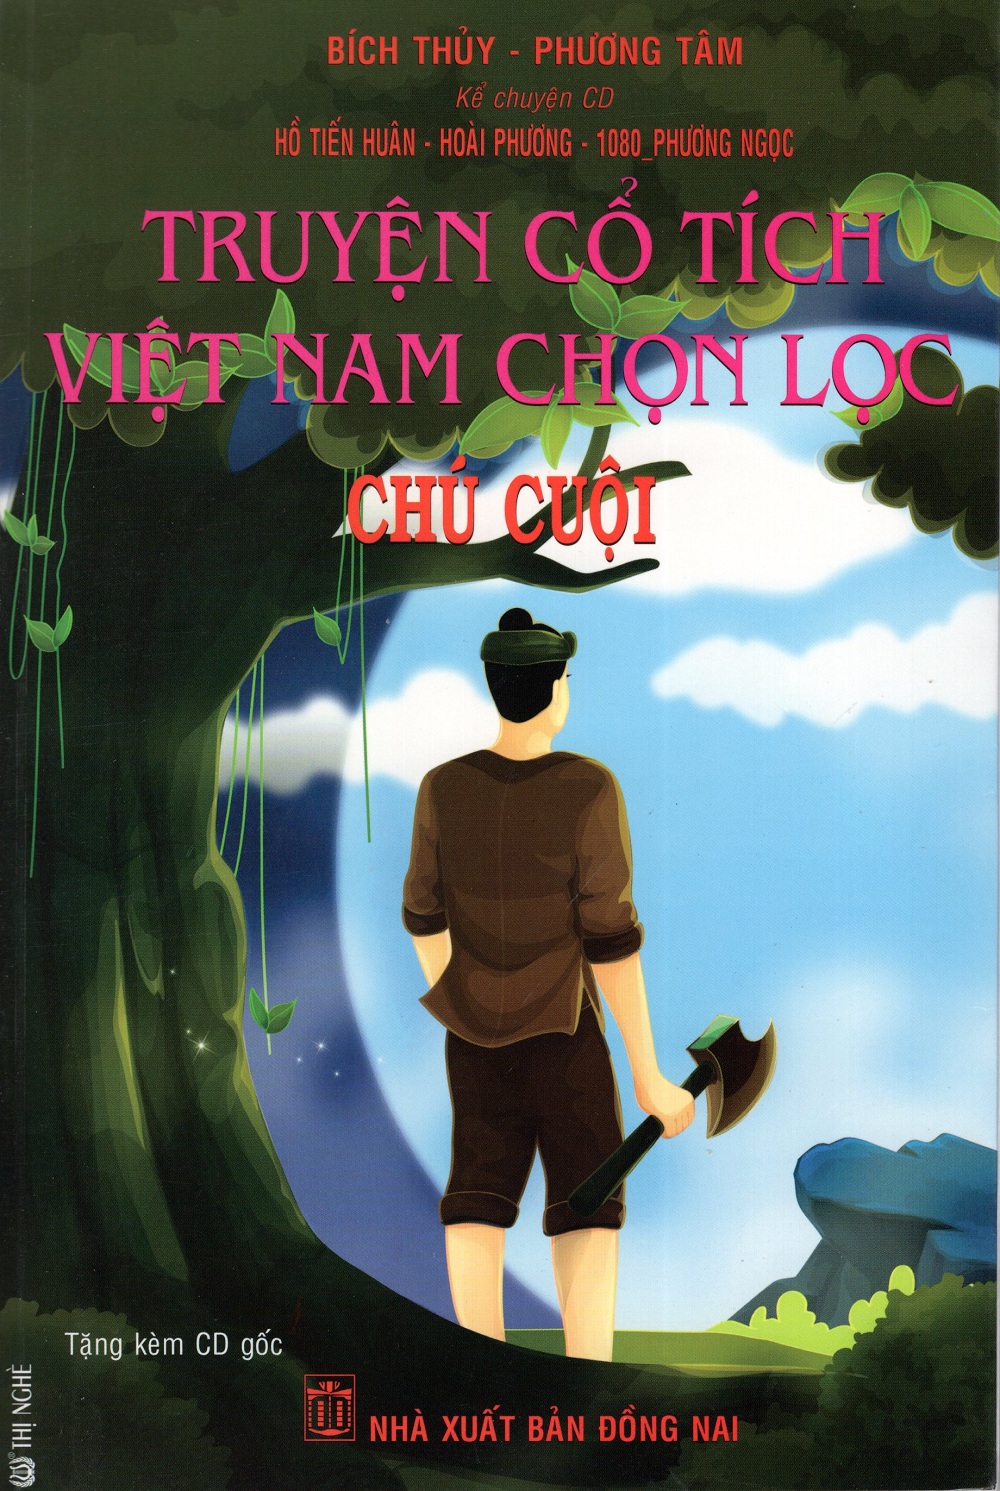 Bìa sách Truyện Cổ Tích Việt Nam Chọn Lọc - Chú Cuội (Kèm CD)